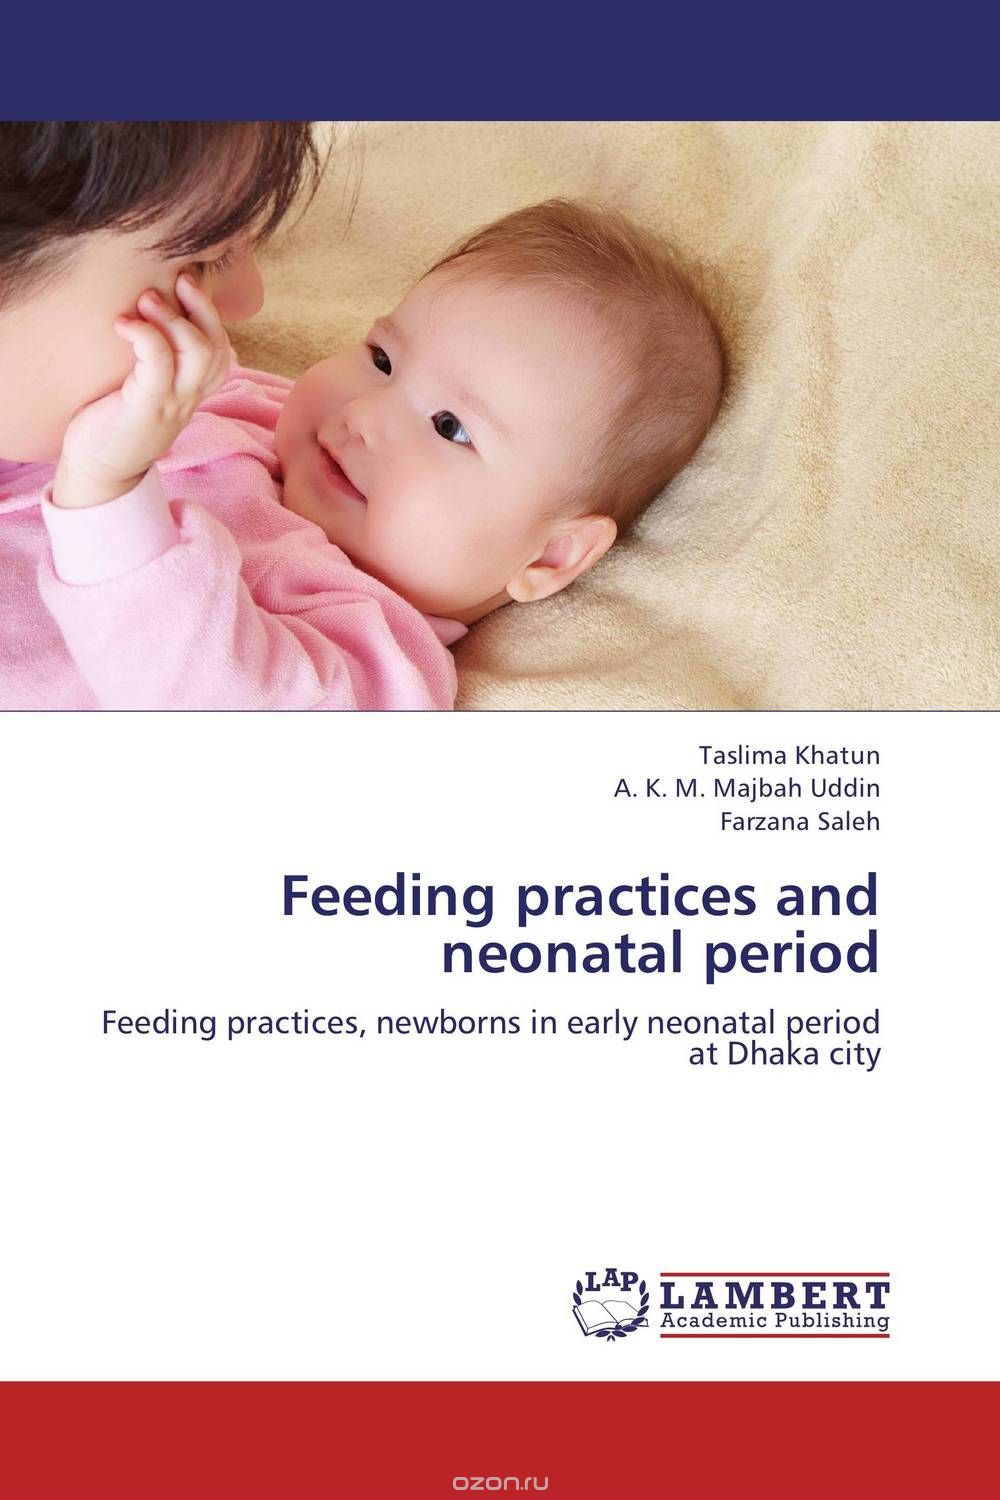 Скачать книгу "Feeding practices and neonatal period"